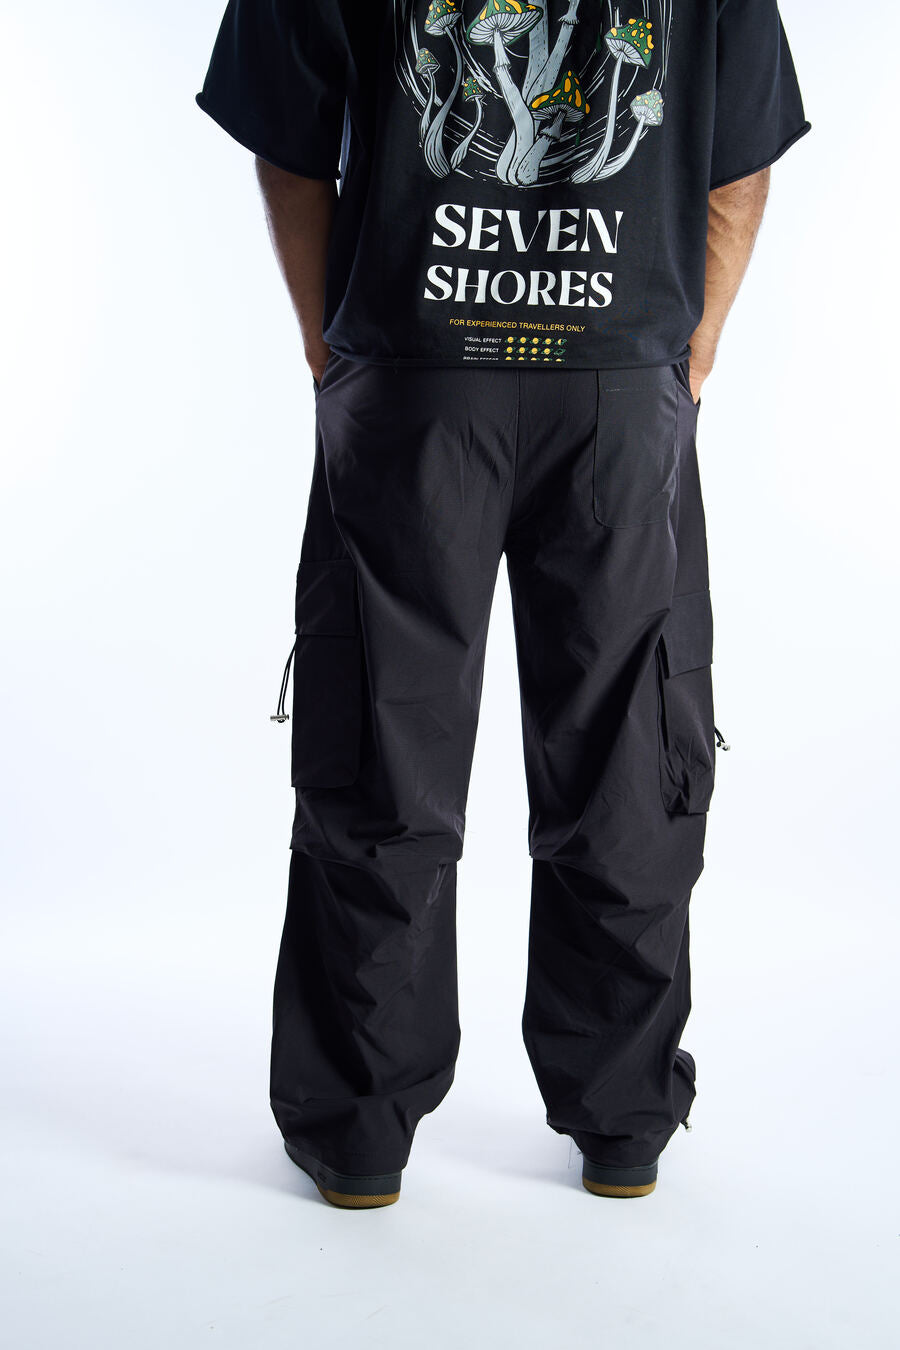 7 Shores Black Carbon Pants